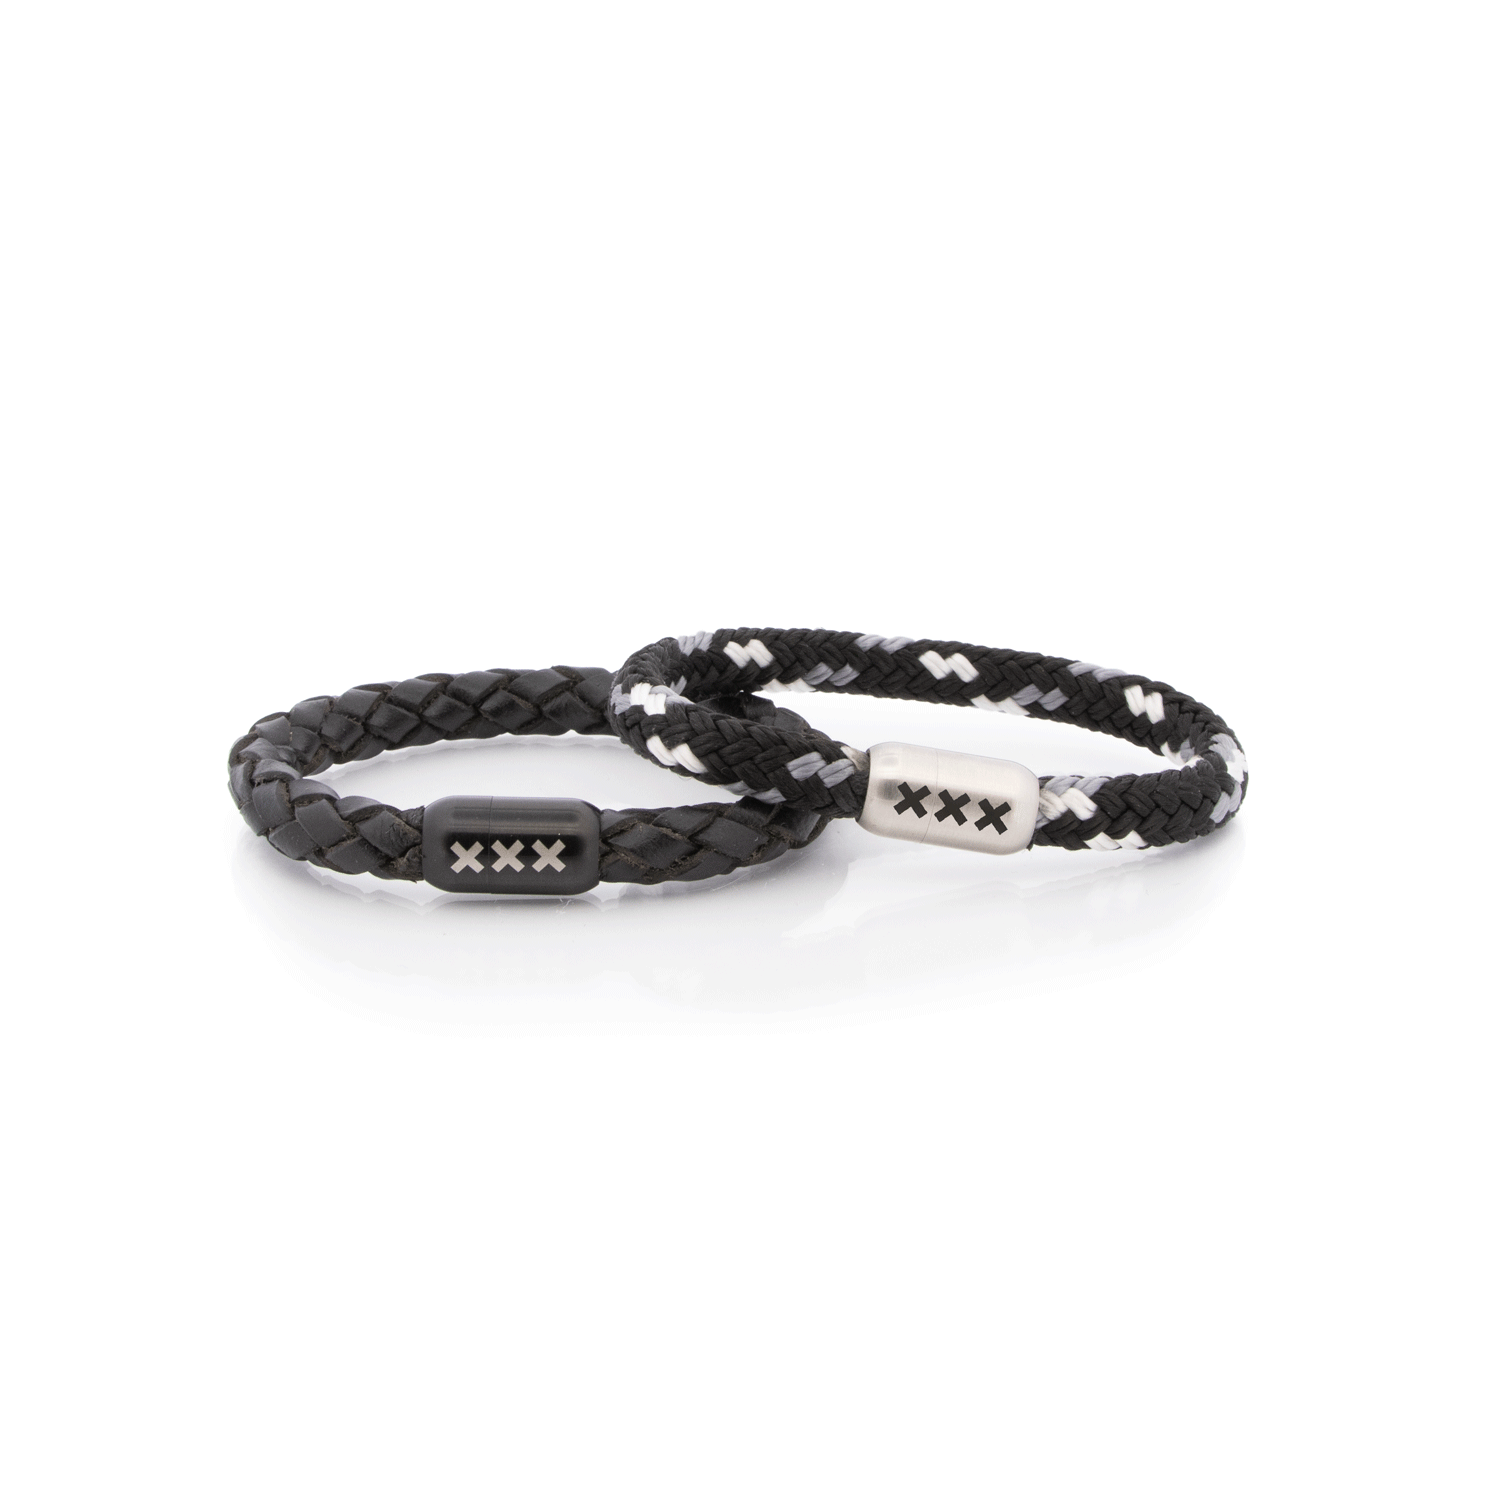 AMSTERDAM SIERAAD - Bracelet Leather